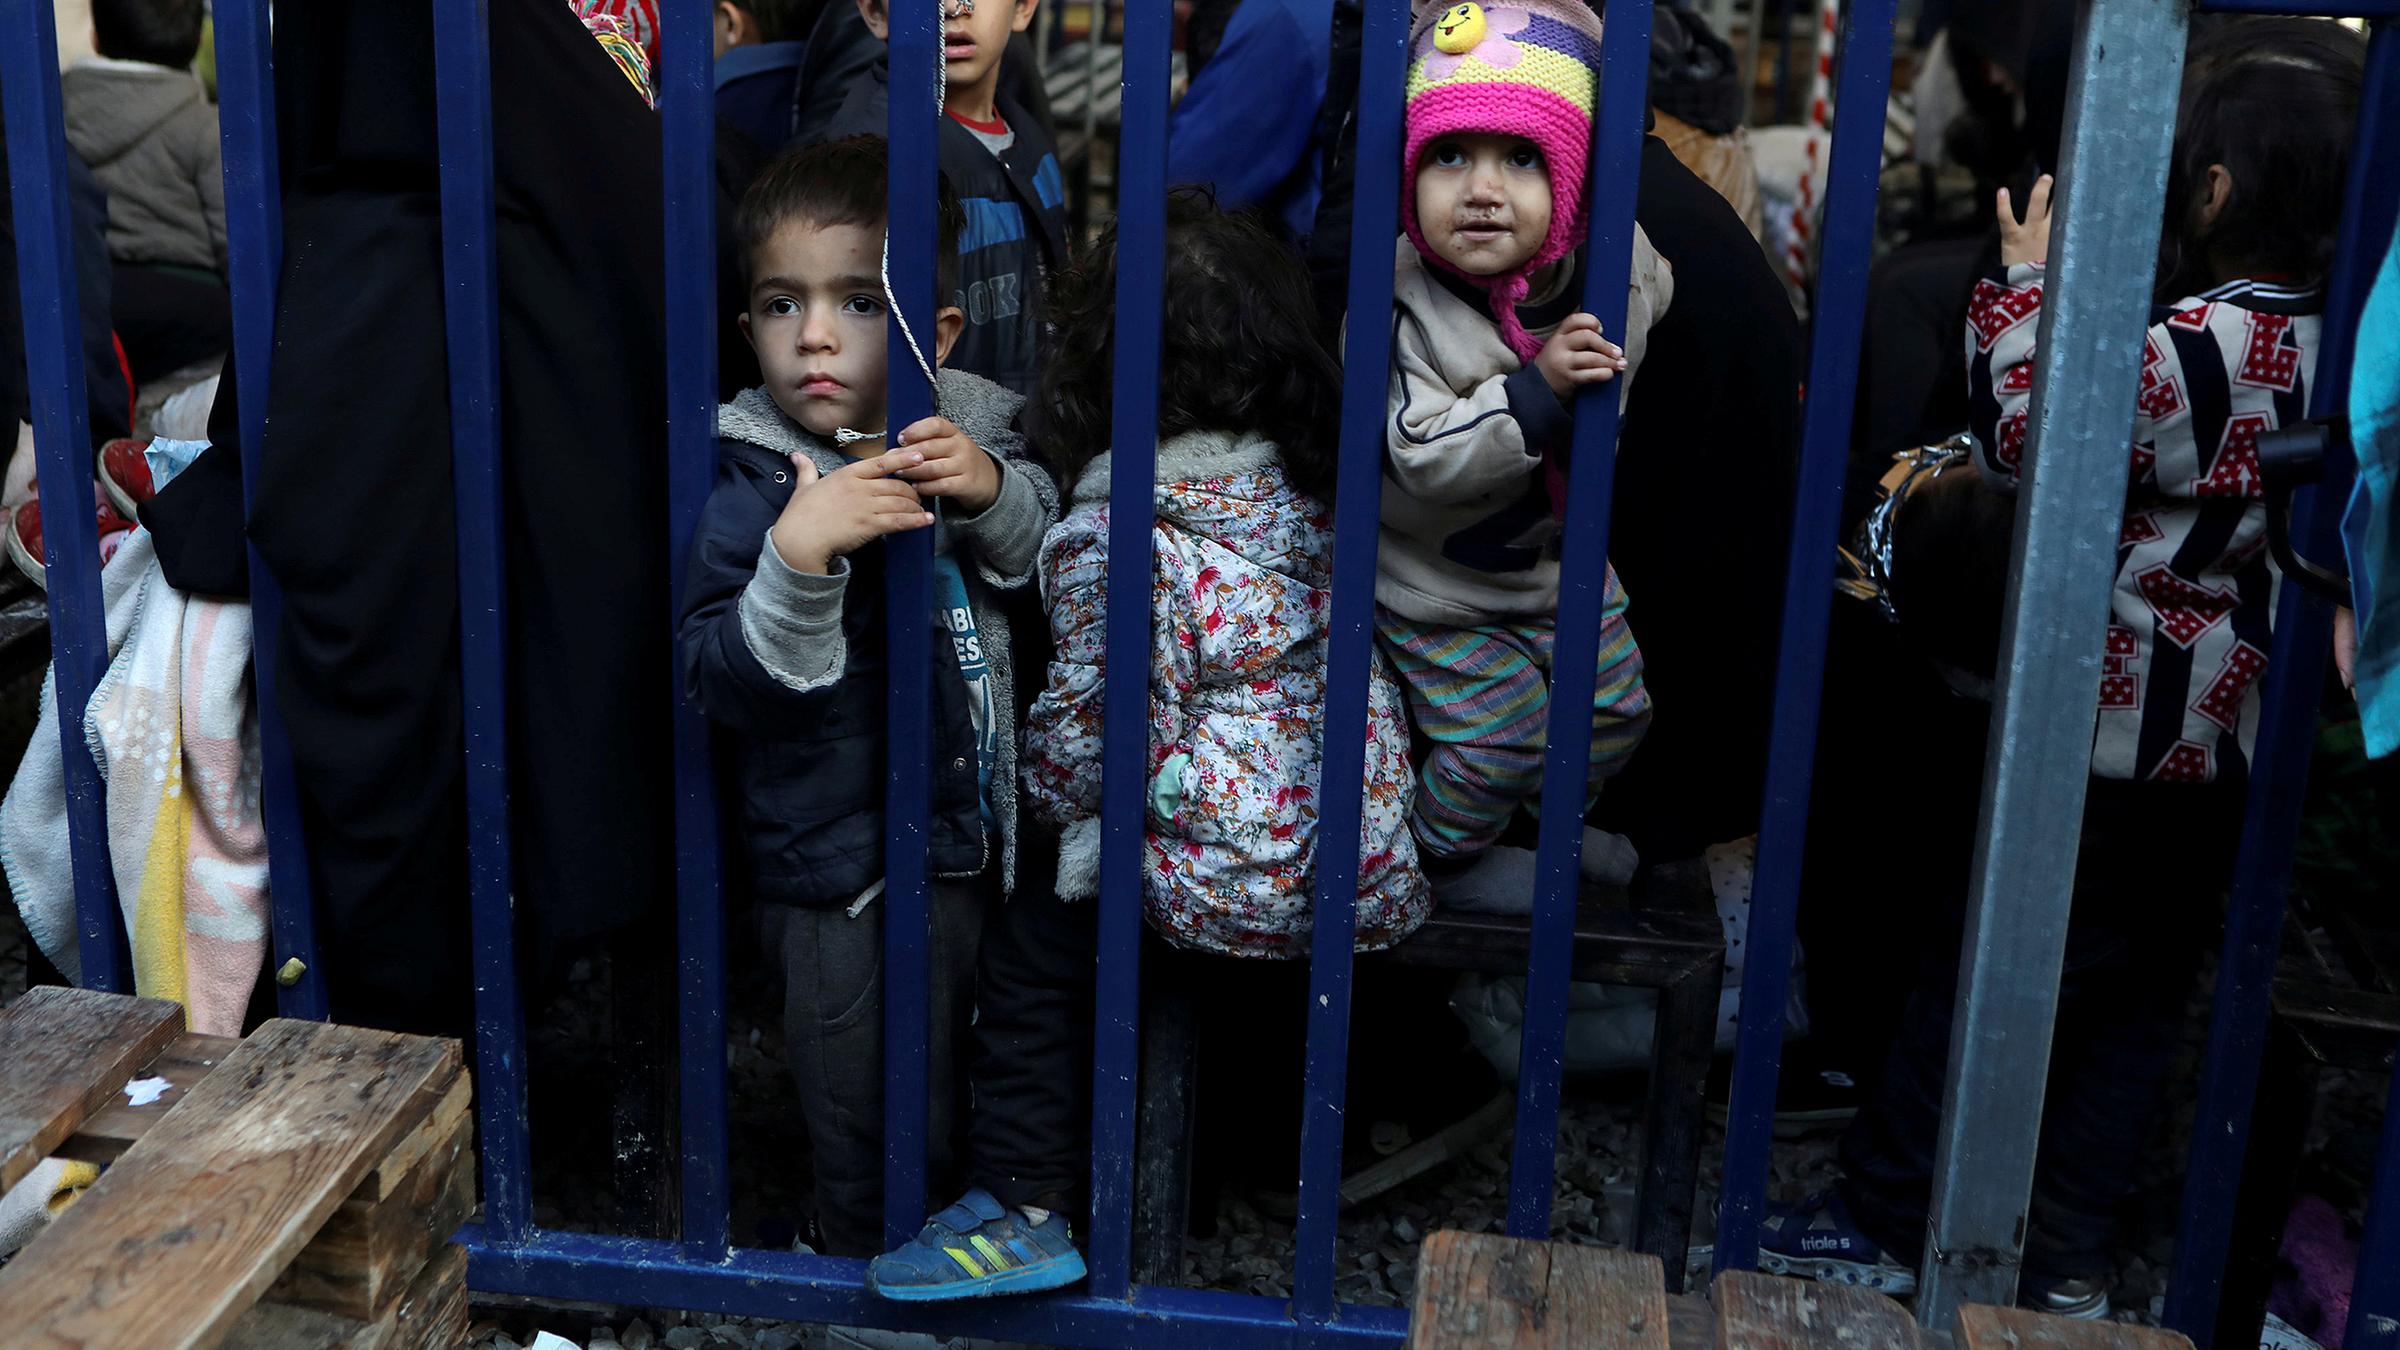 Uberfullte Lager In Griechenland 50 Fluchtlingskinder Kommen Nach Deutschland Zdfheute